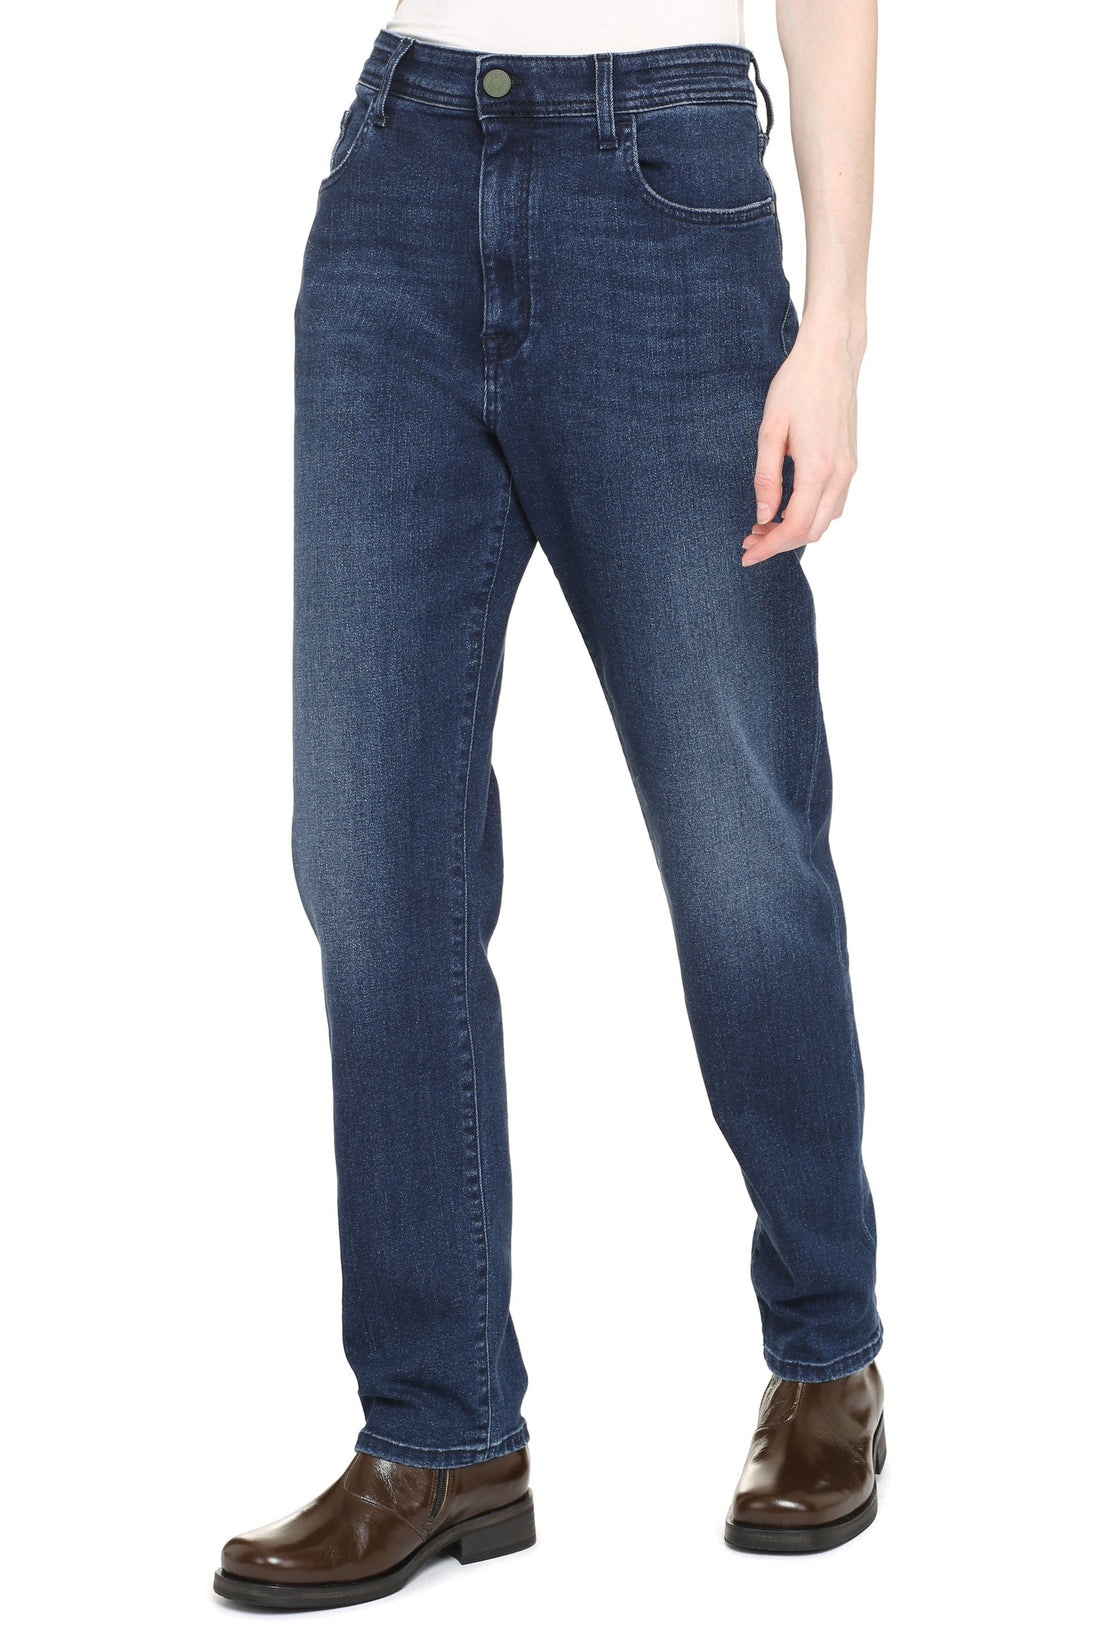 Jacob Cohen-OUTLET-SALE-Olivia high-rise slim fit jeans-ARCHIVIST